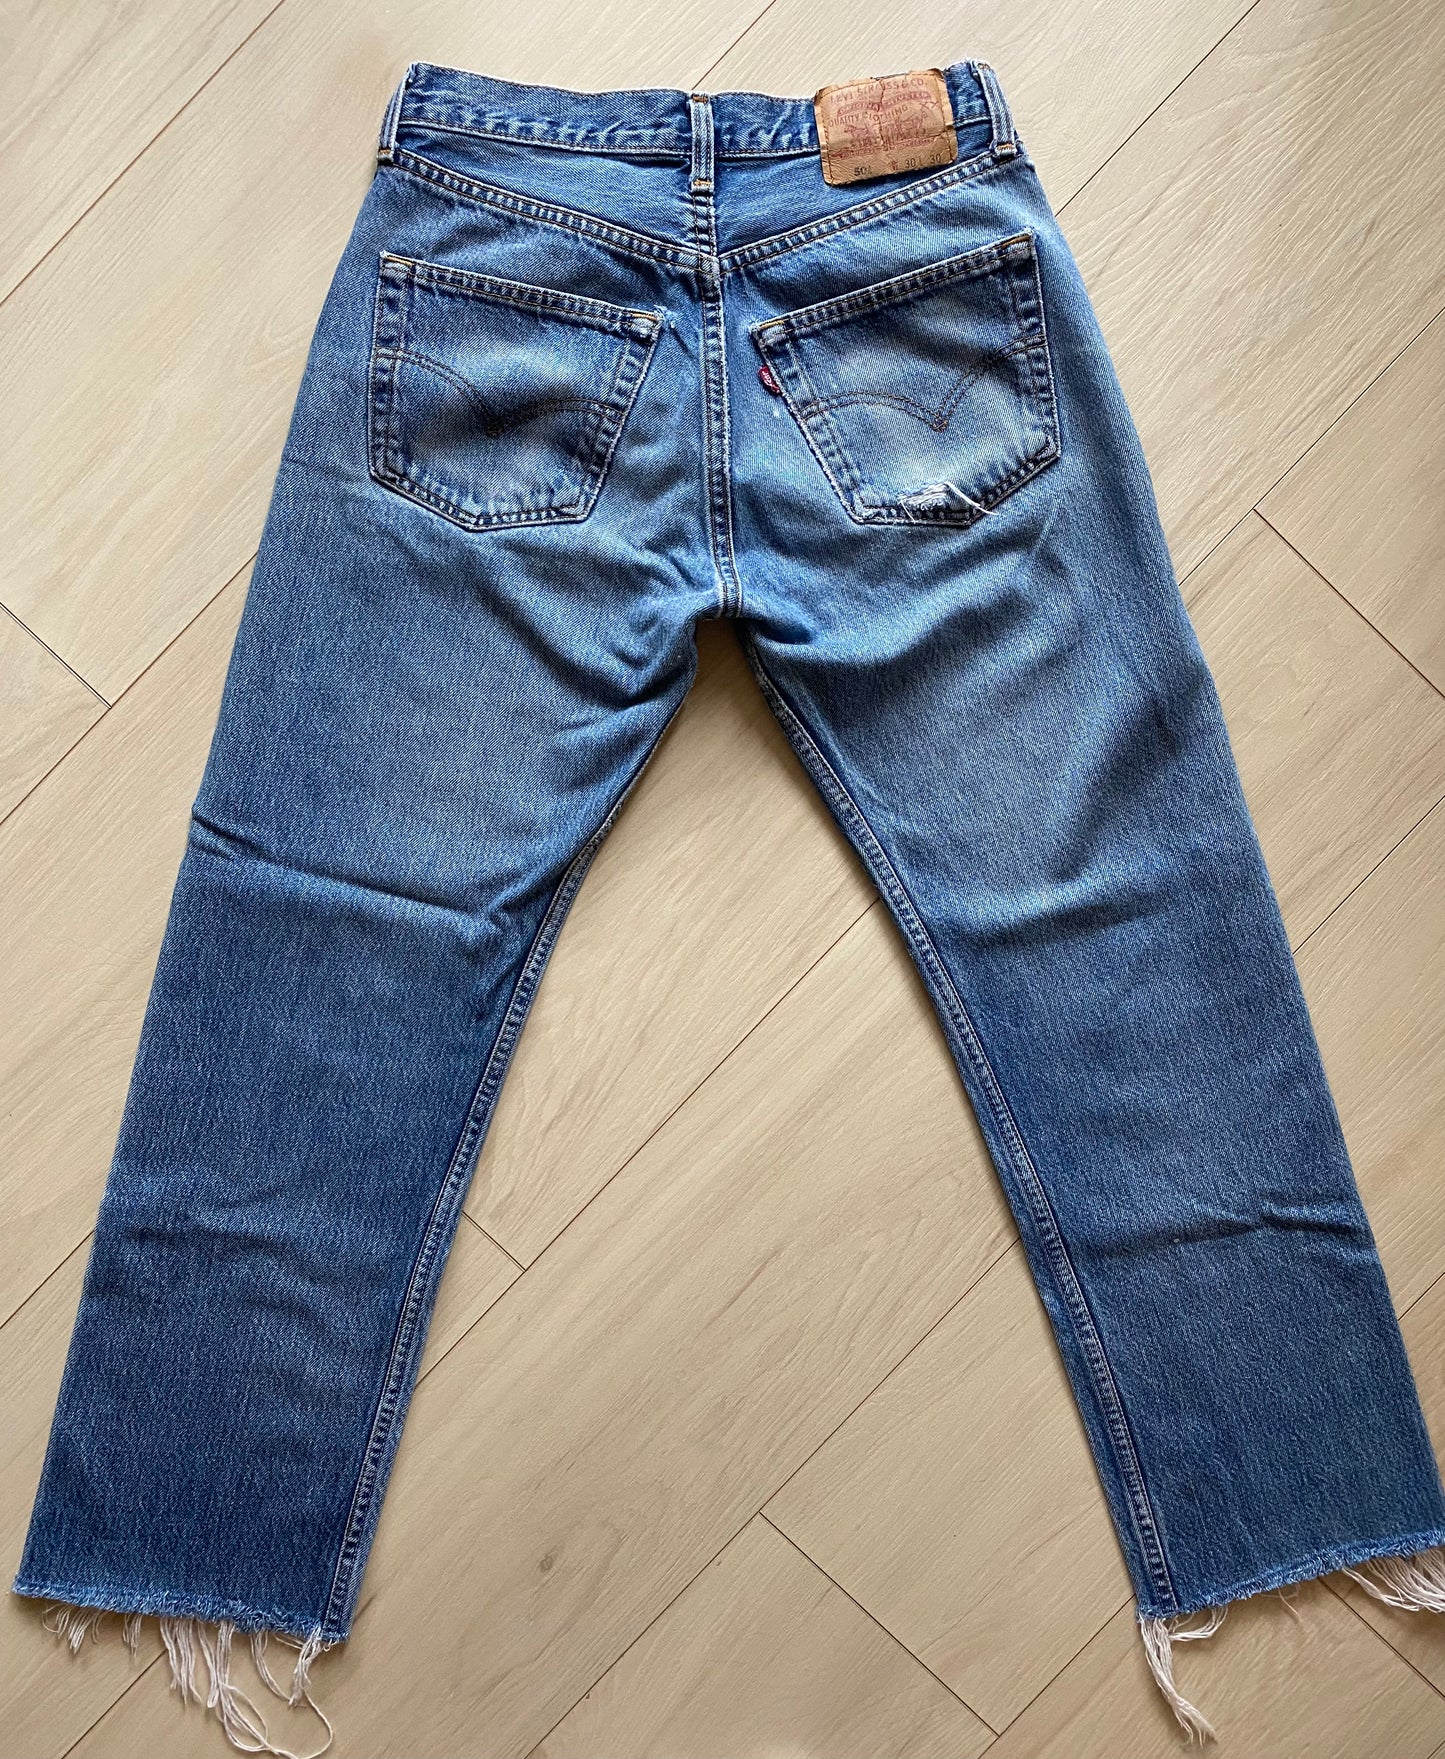 Size 27/28 Levi’s 501 jeans